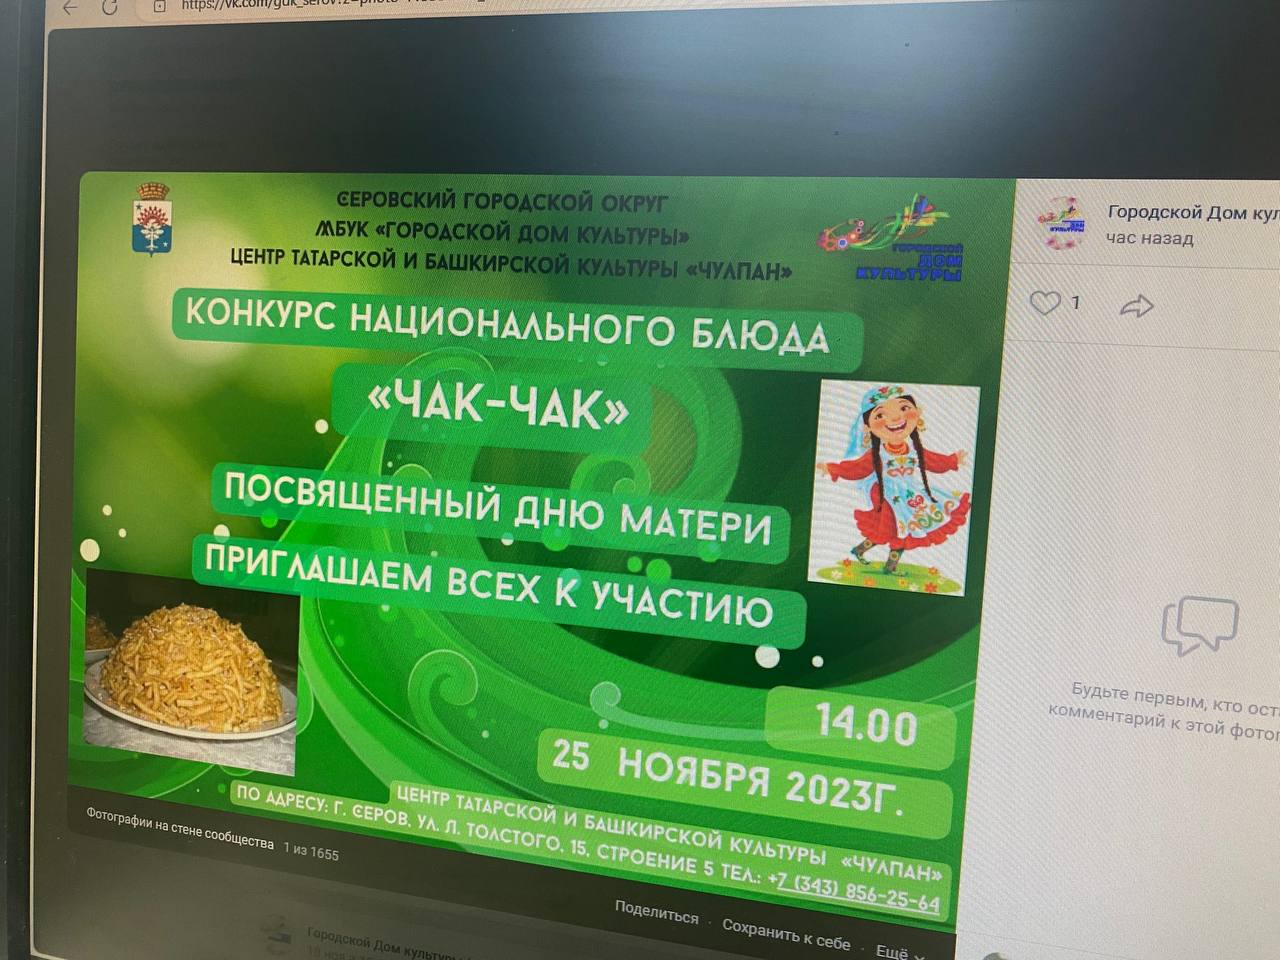 В Серове проведут конкурс национального блюда “Чак-чак”